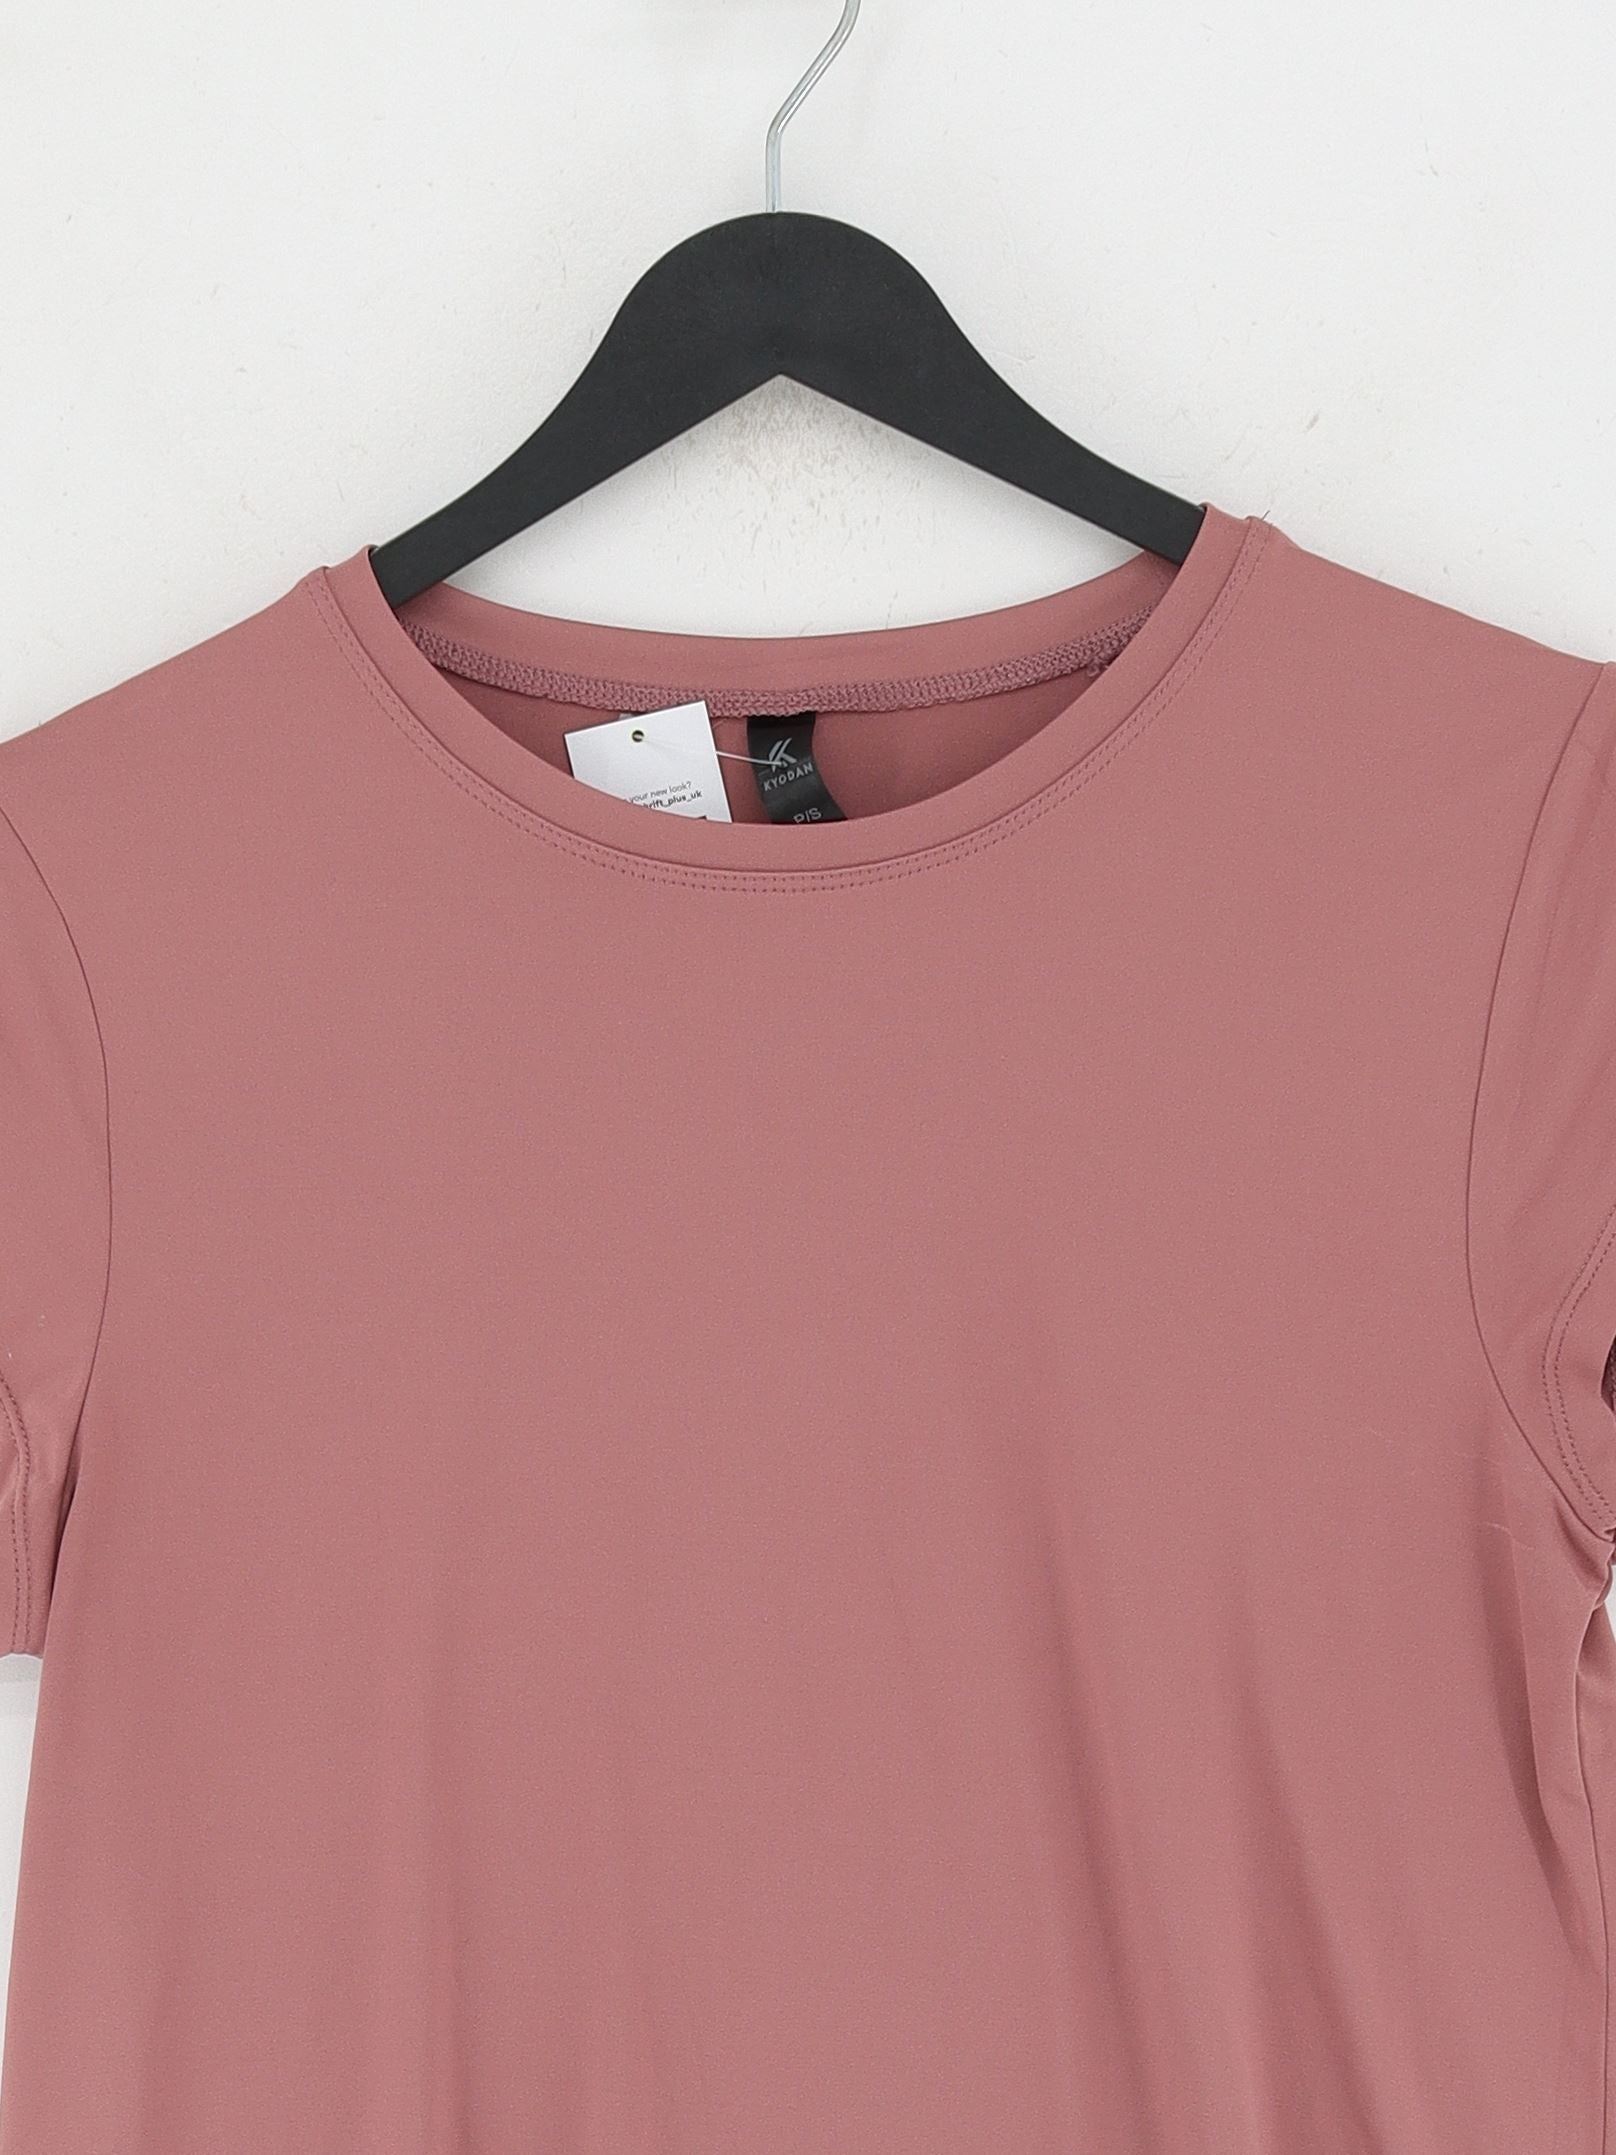 Kyodan Women's T-Shirt S Pink 100% Other